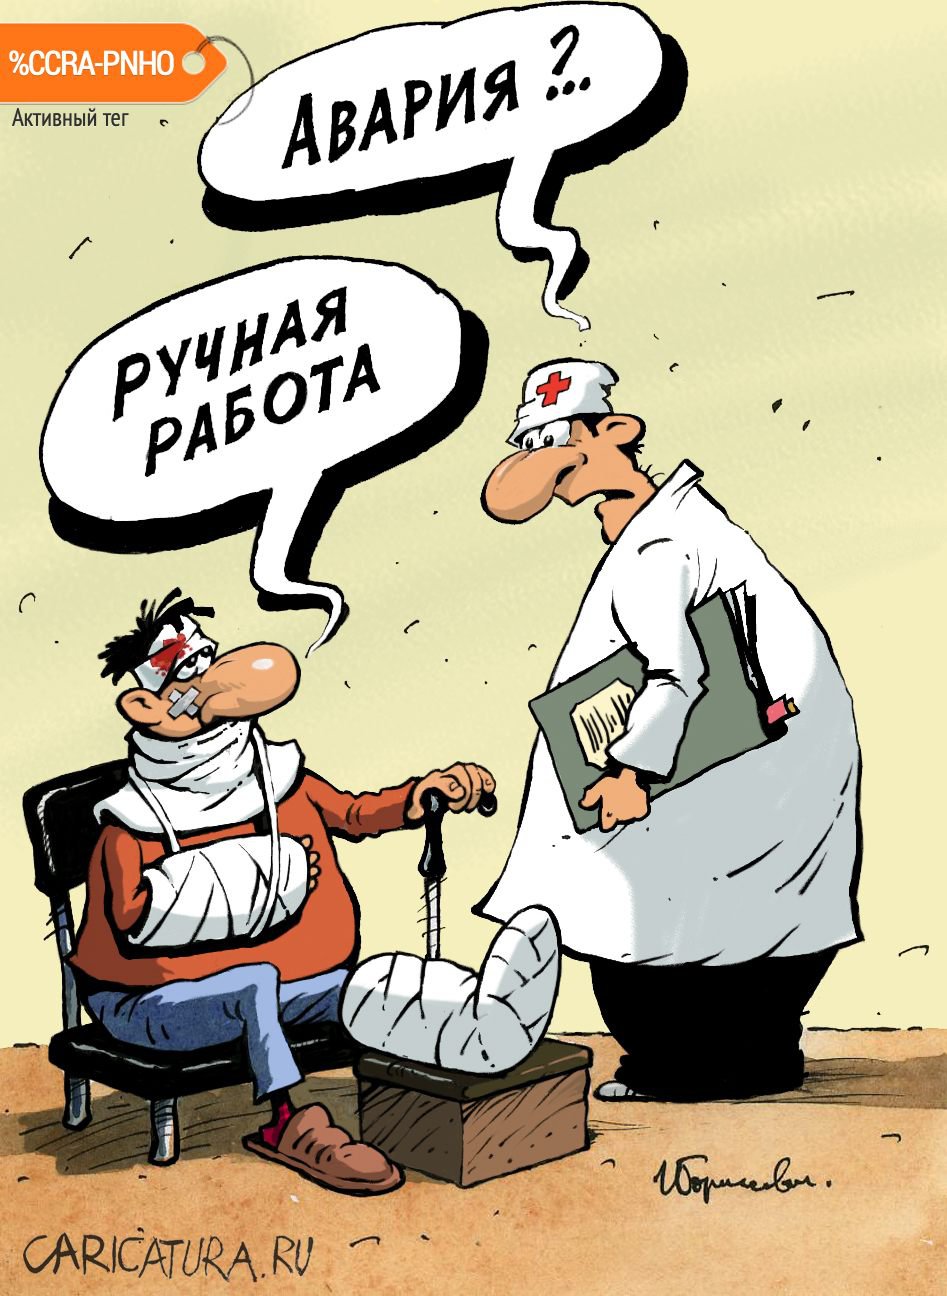 Карикатура "Ручная работа", Игорь Елистратов